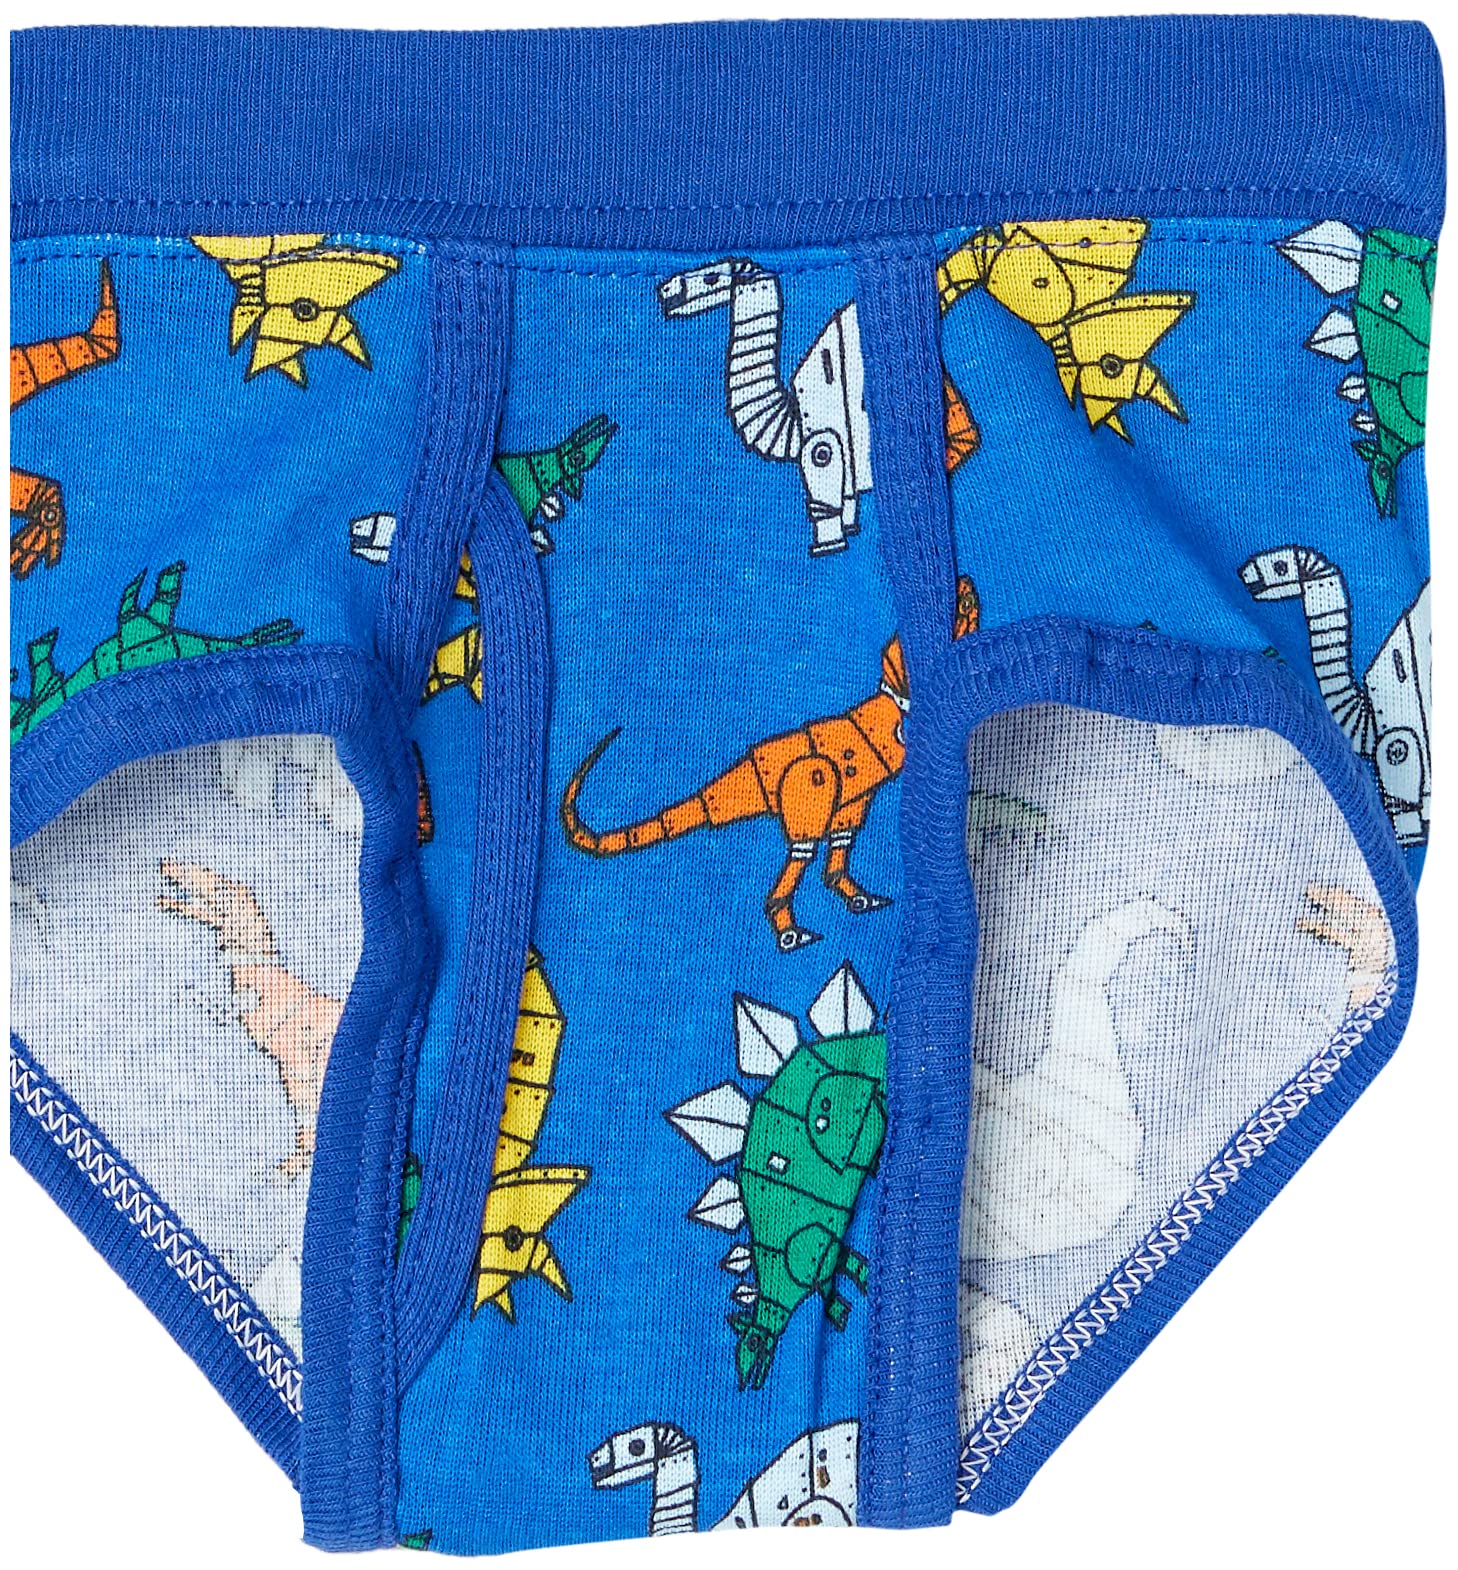 Hanes Toddler Boys' Briefs Pack, Dinosaur Printed Cotton Underwear, 10-Pack